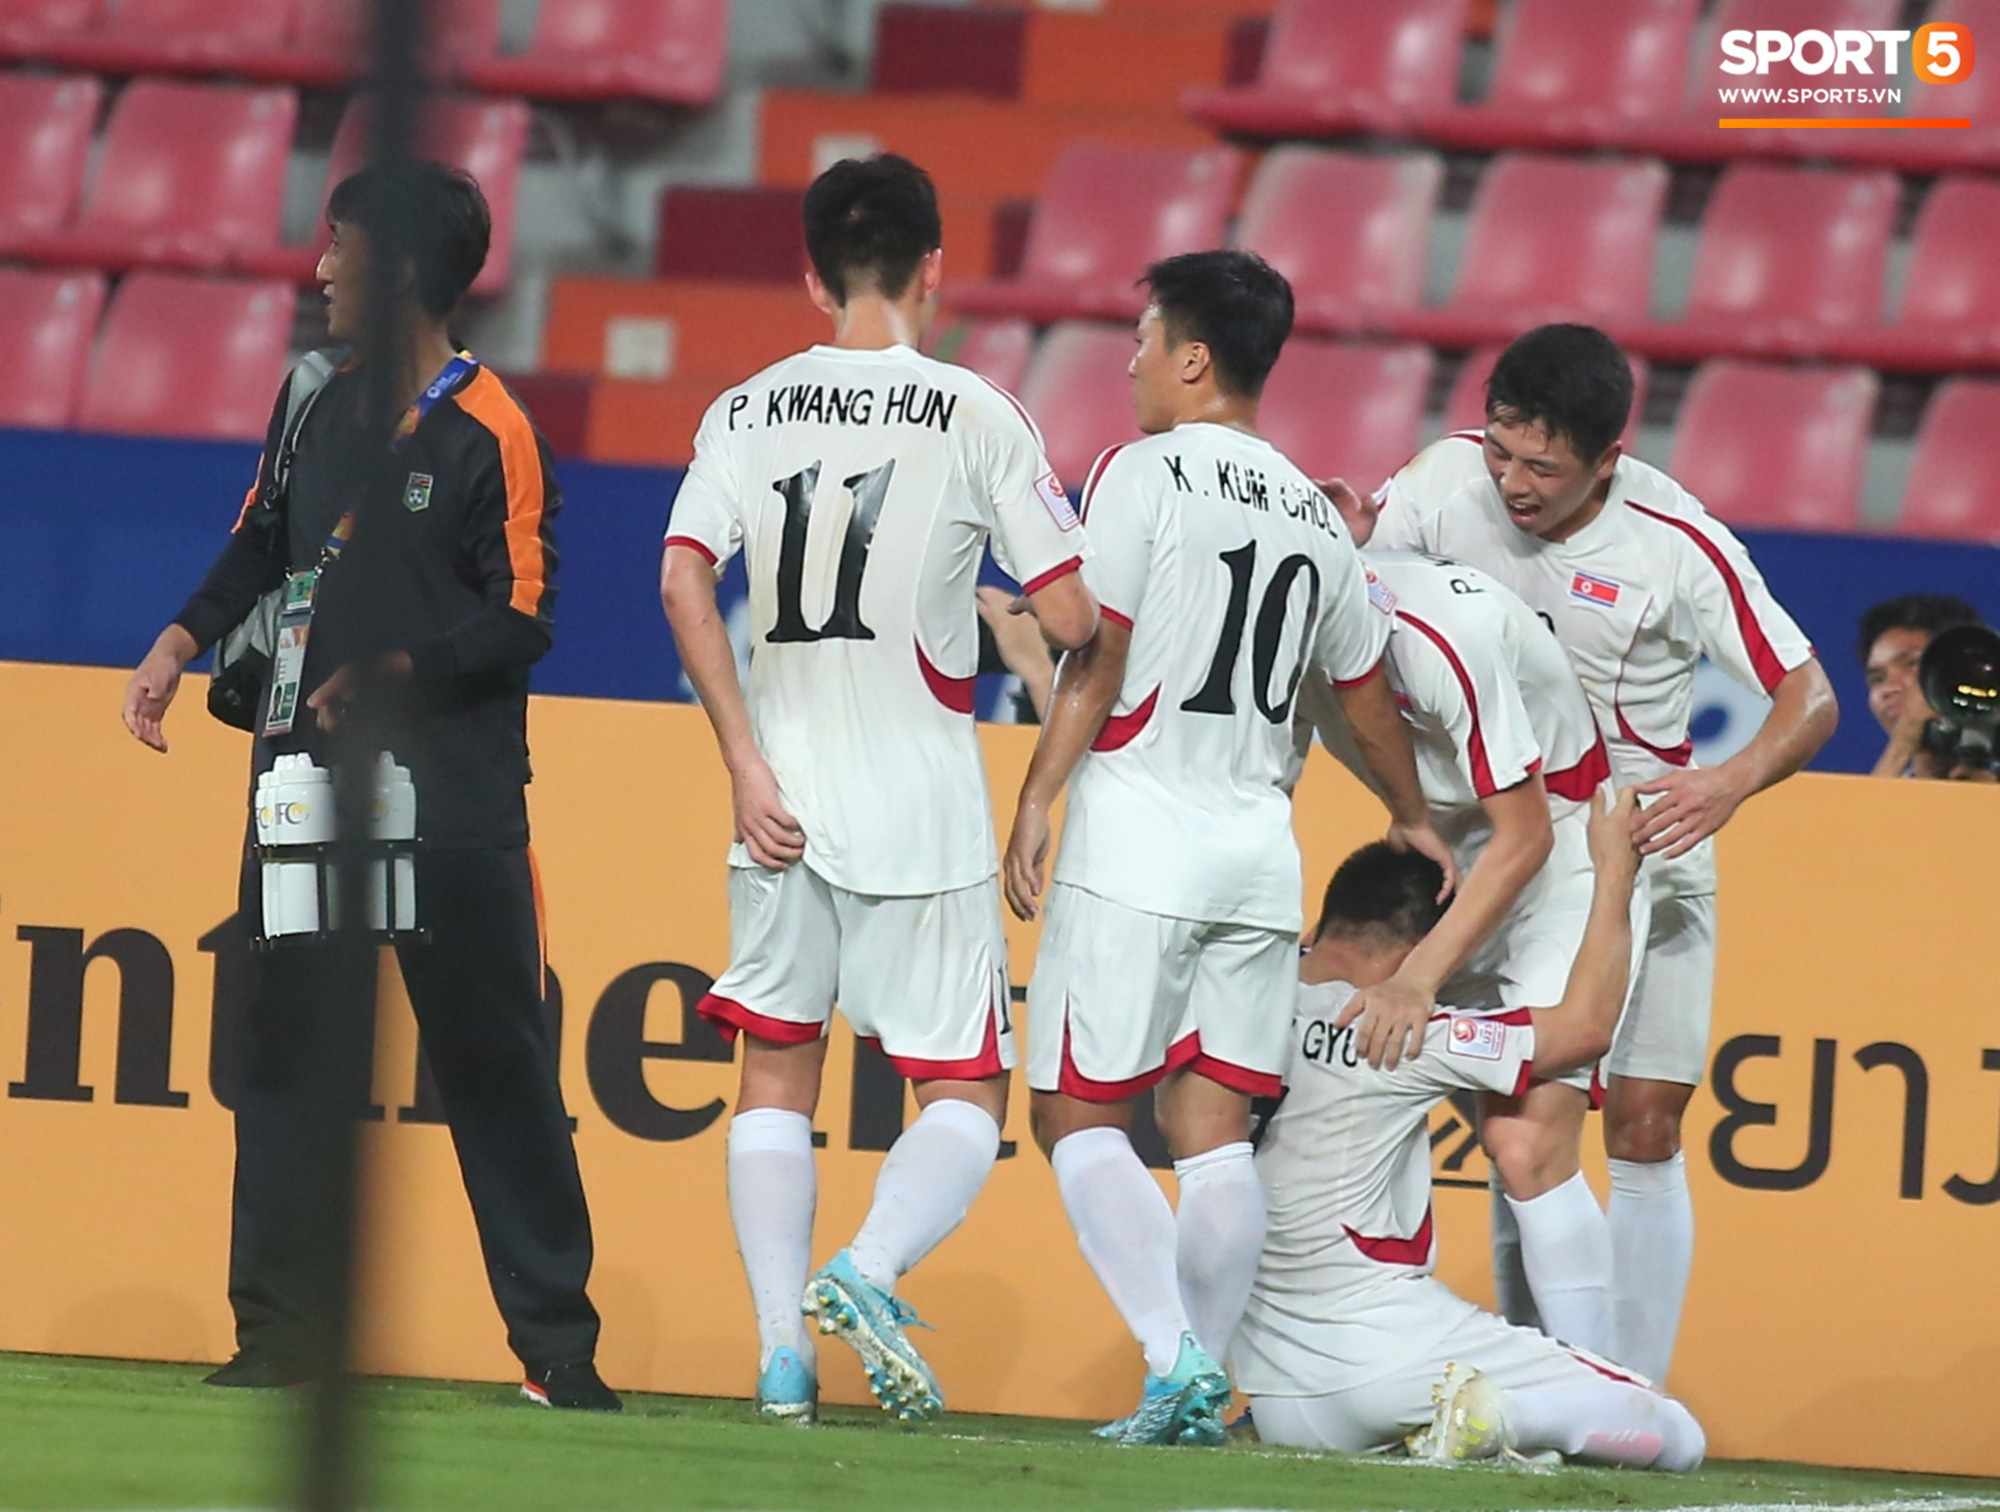 Khoảnh khắc đáng buồn nhất VCK U23 châu Á 2020: Đình Trọng nhận thẻ đỏ, U23 Việt Nam mất hết sau trận đấu với CHDCND Triều Tiến - Ảnh 5.